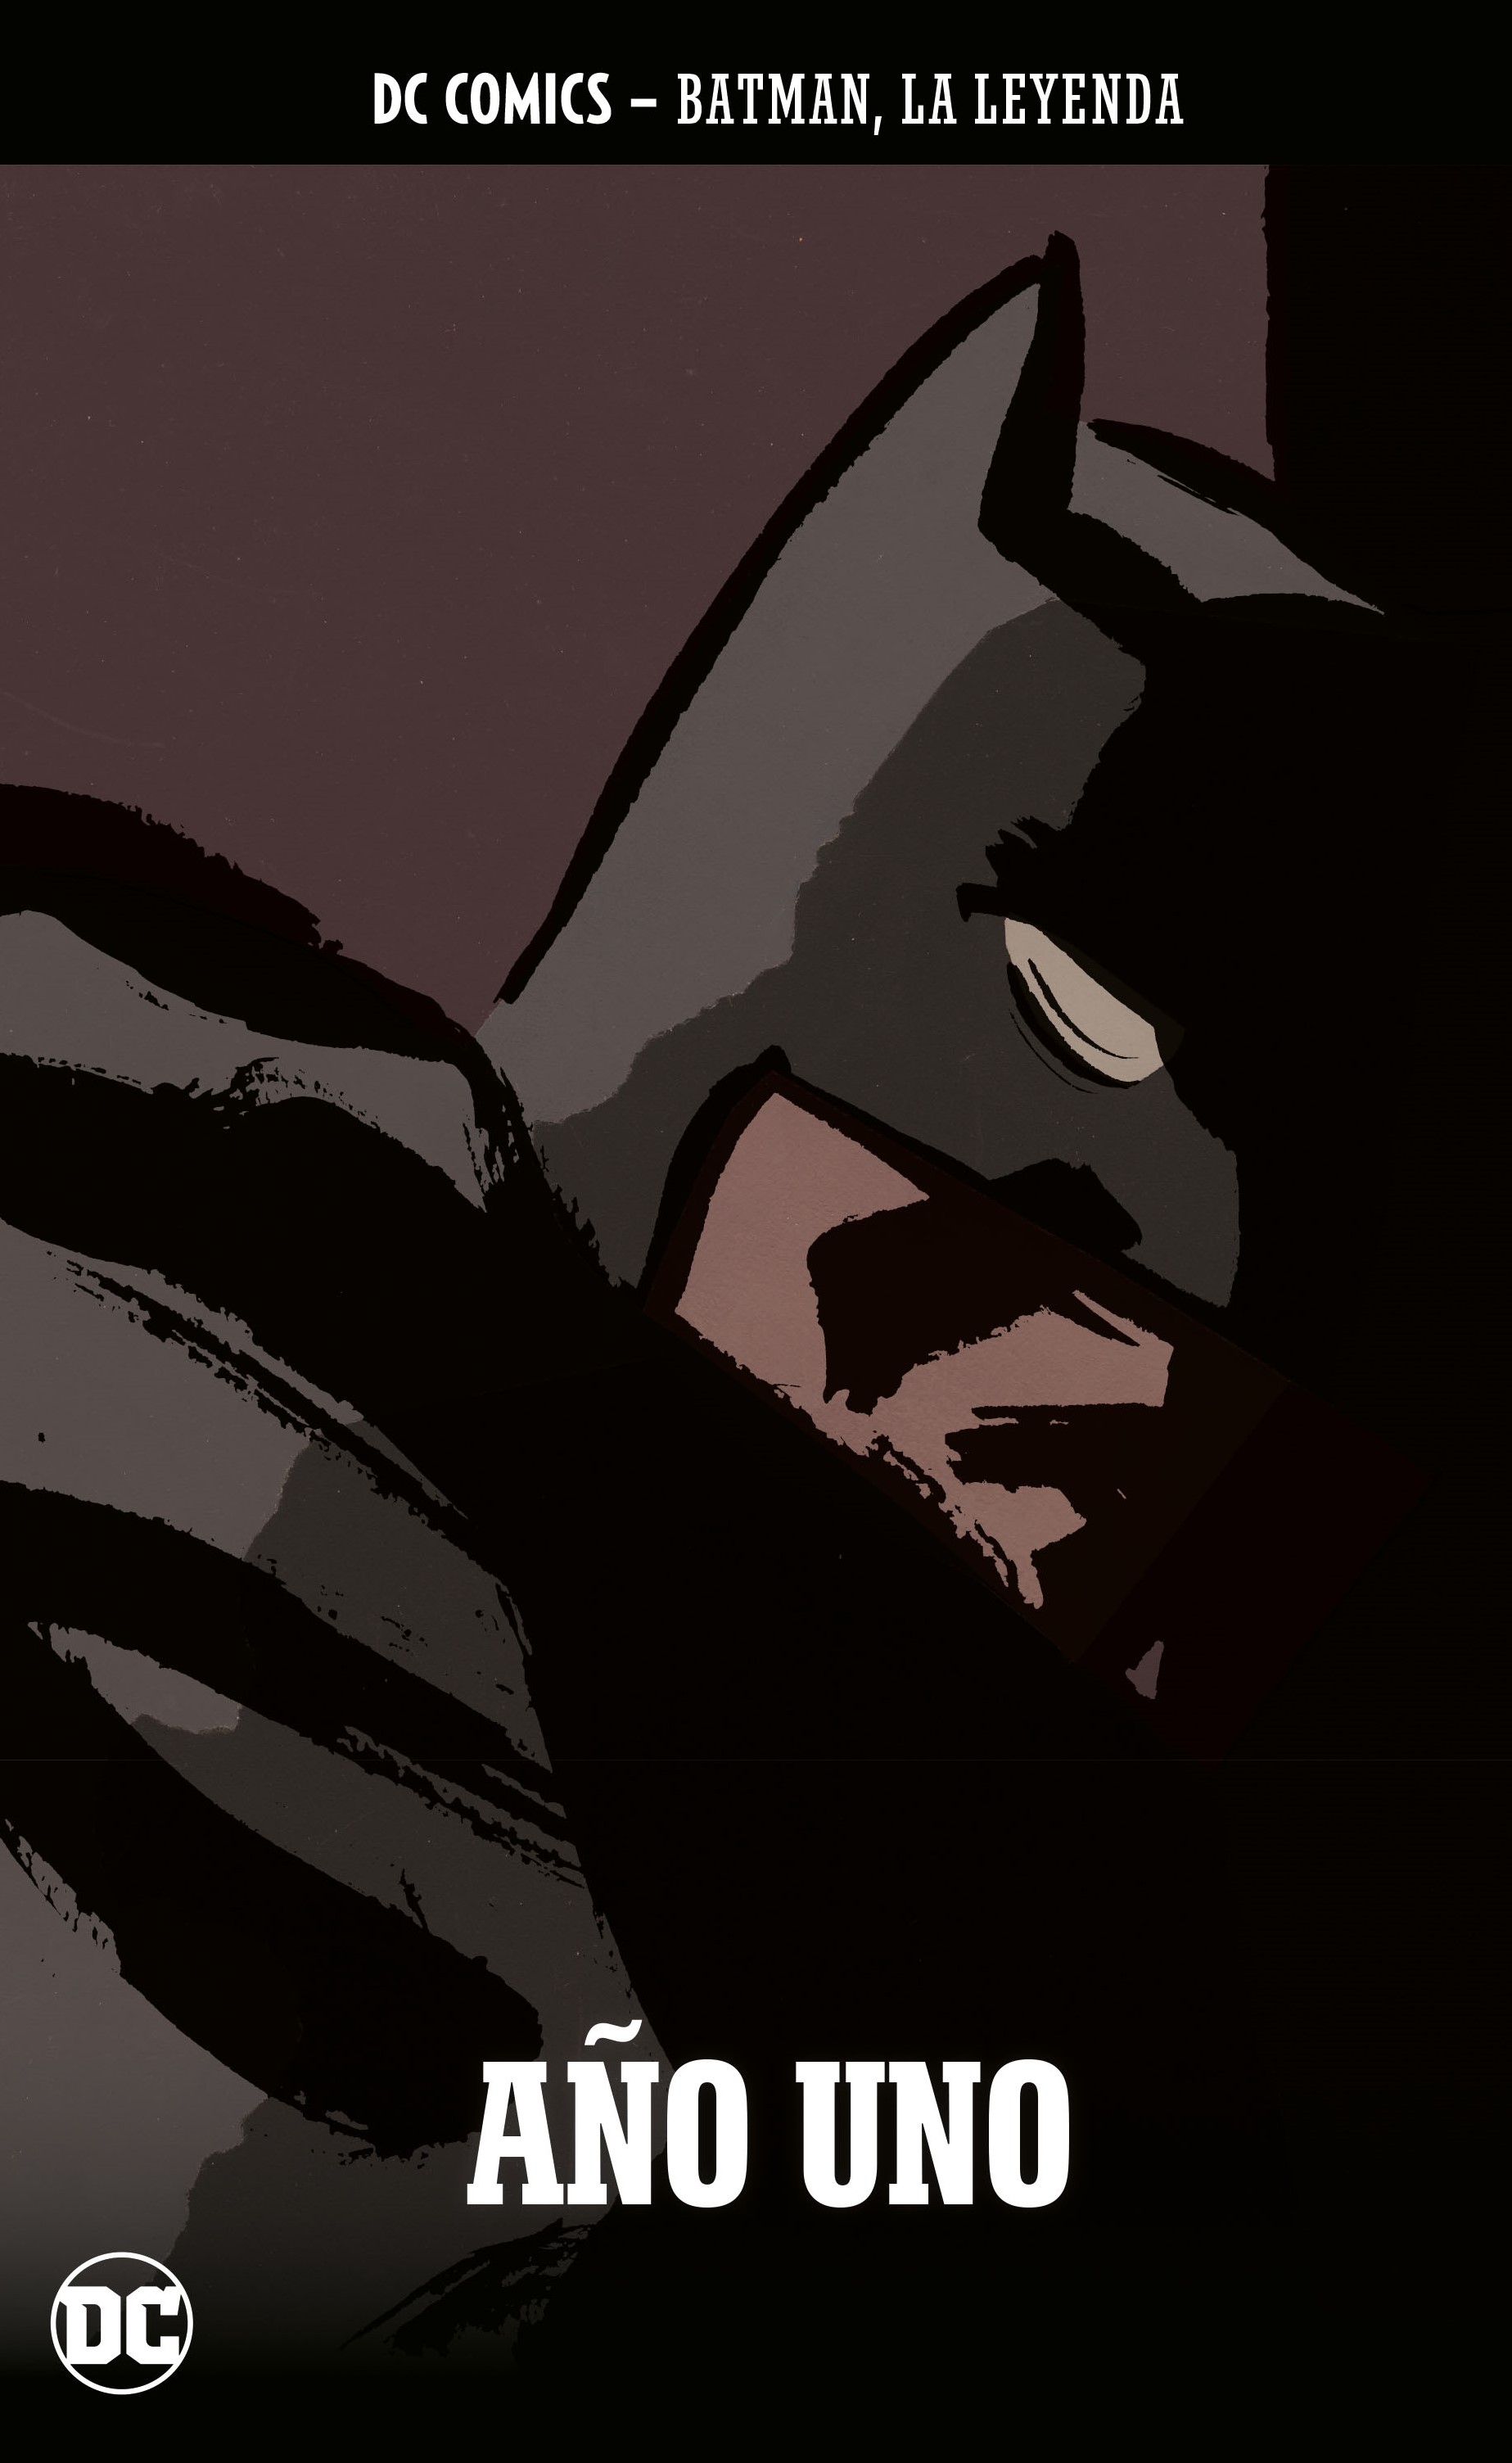 Batman, La Leyenda #78: Año uno